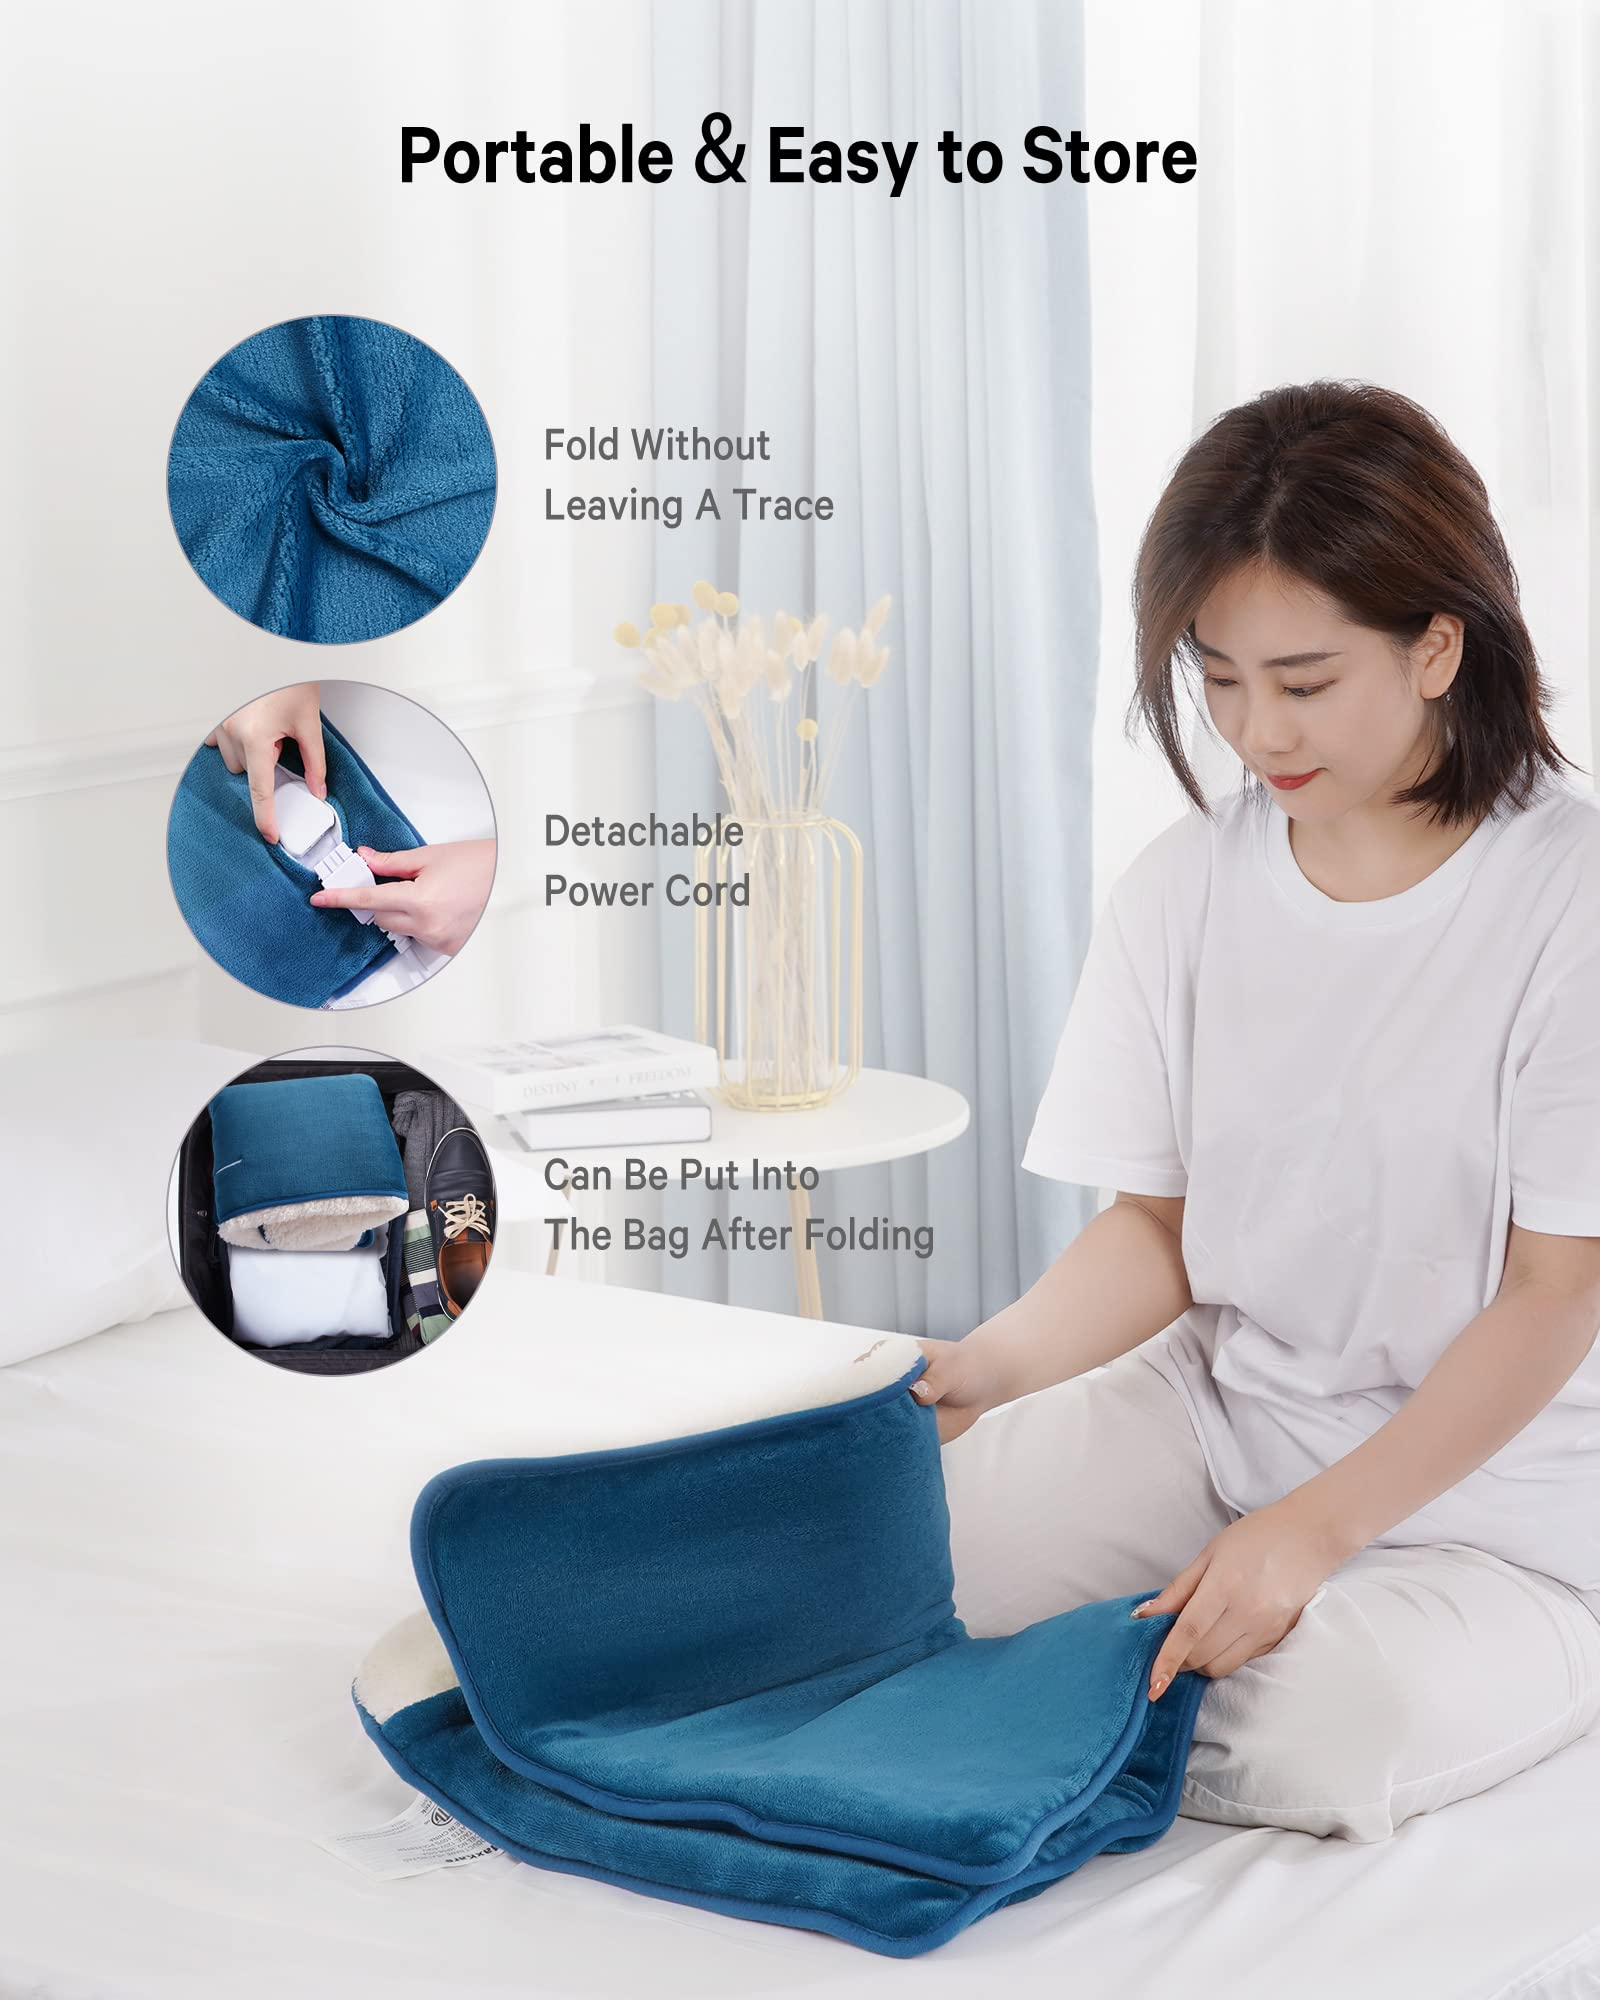 2 x 12 12 Volt - Ultra Flexible Heating Blanket